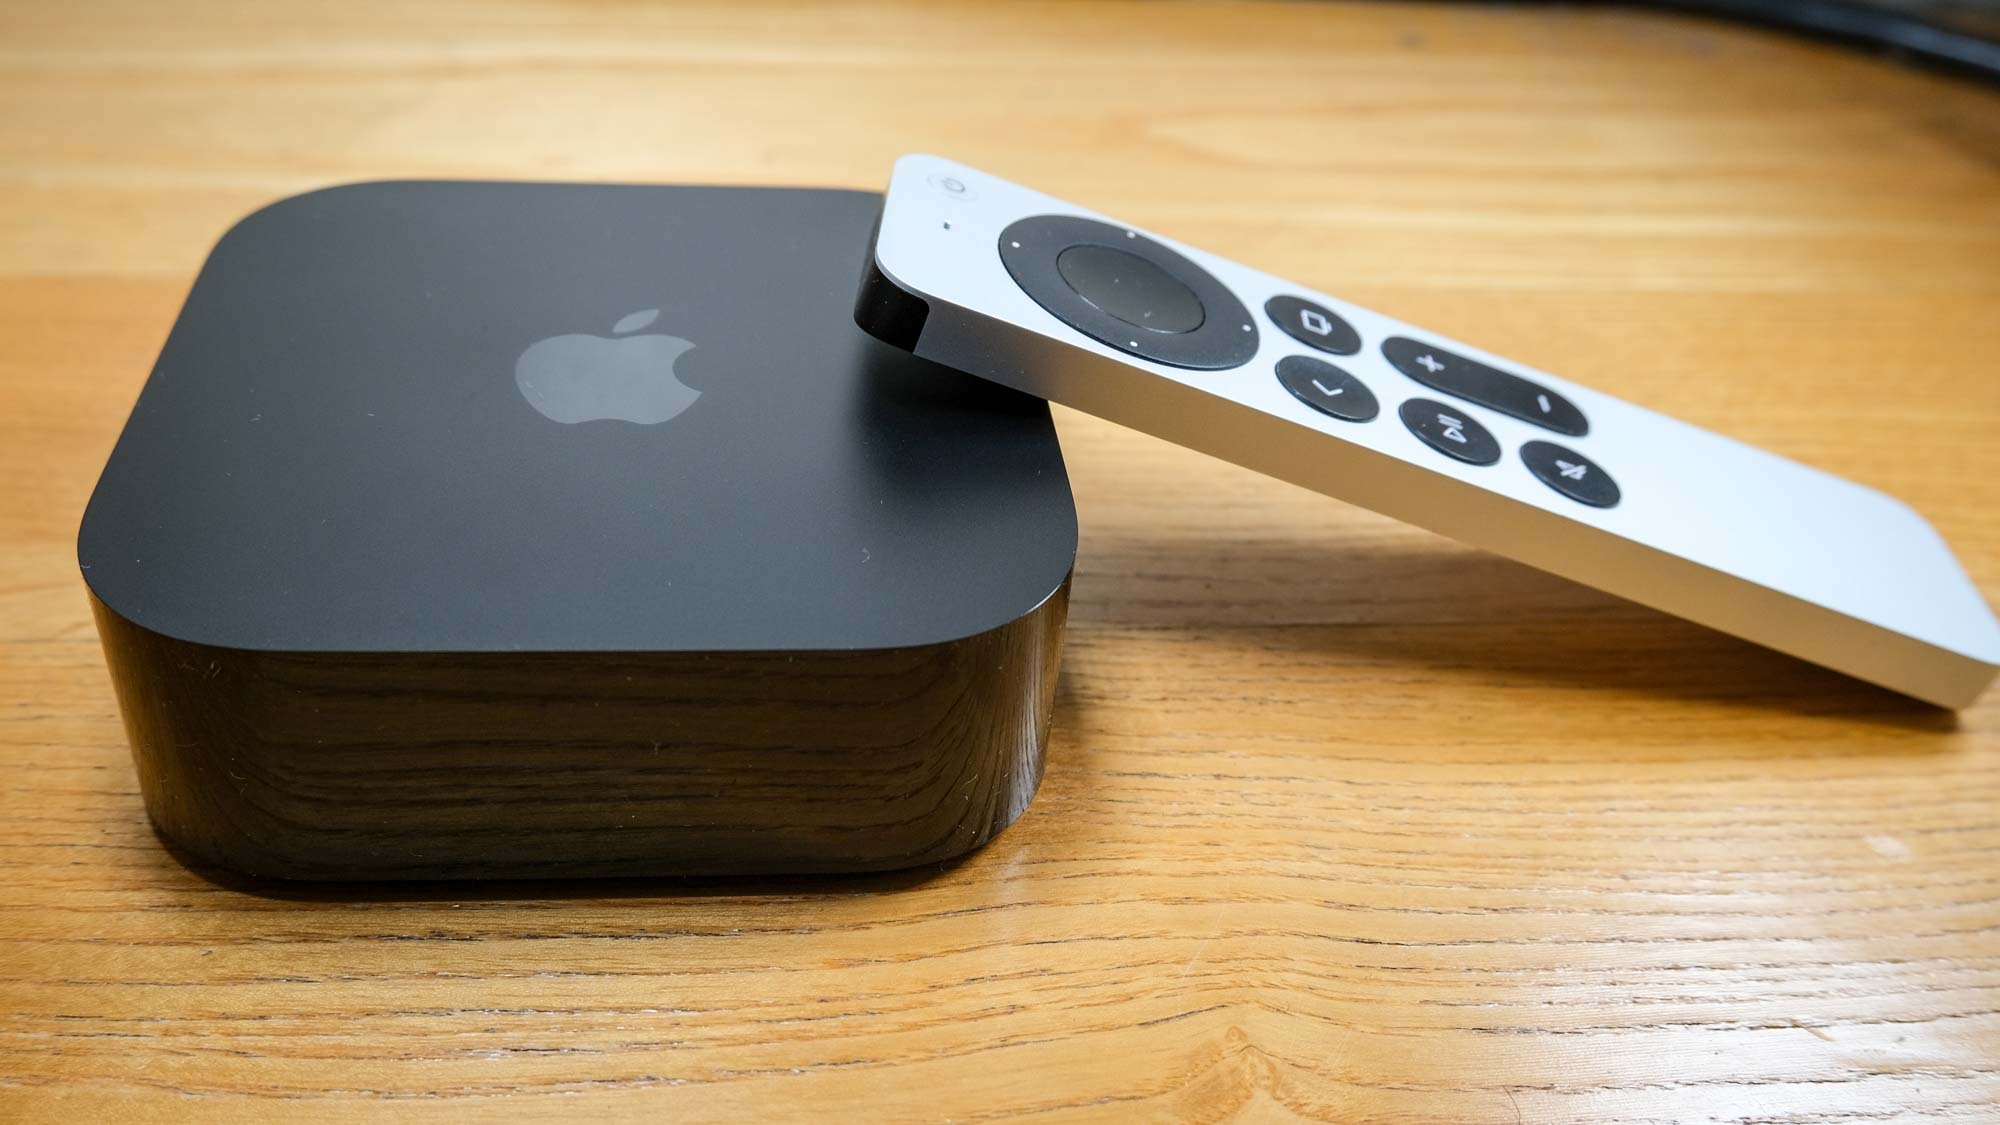 El Apple TV 4K (2022), con el control remoto Siri apoyado en su lado derecho.